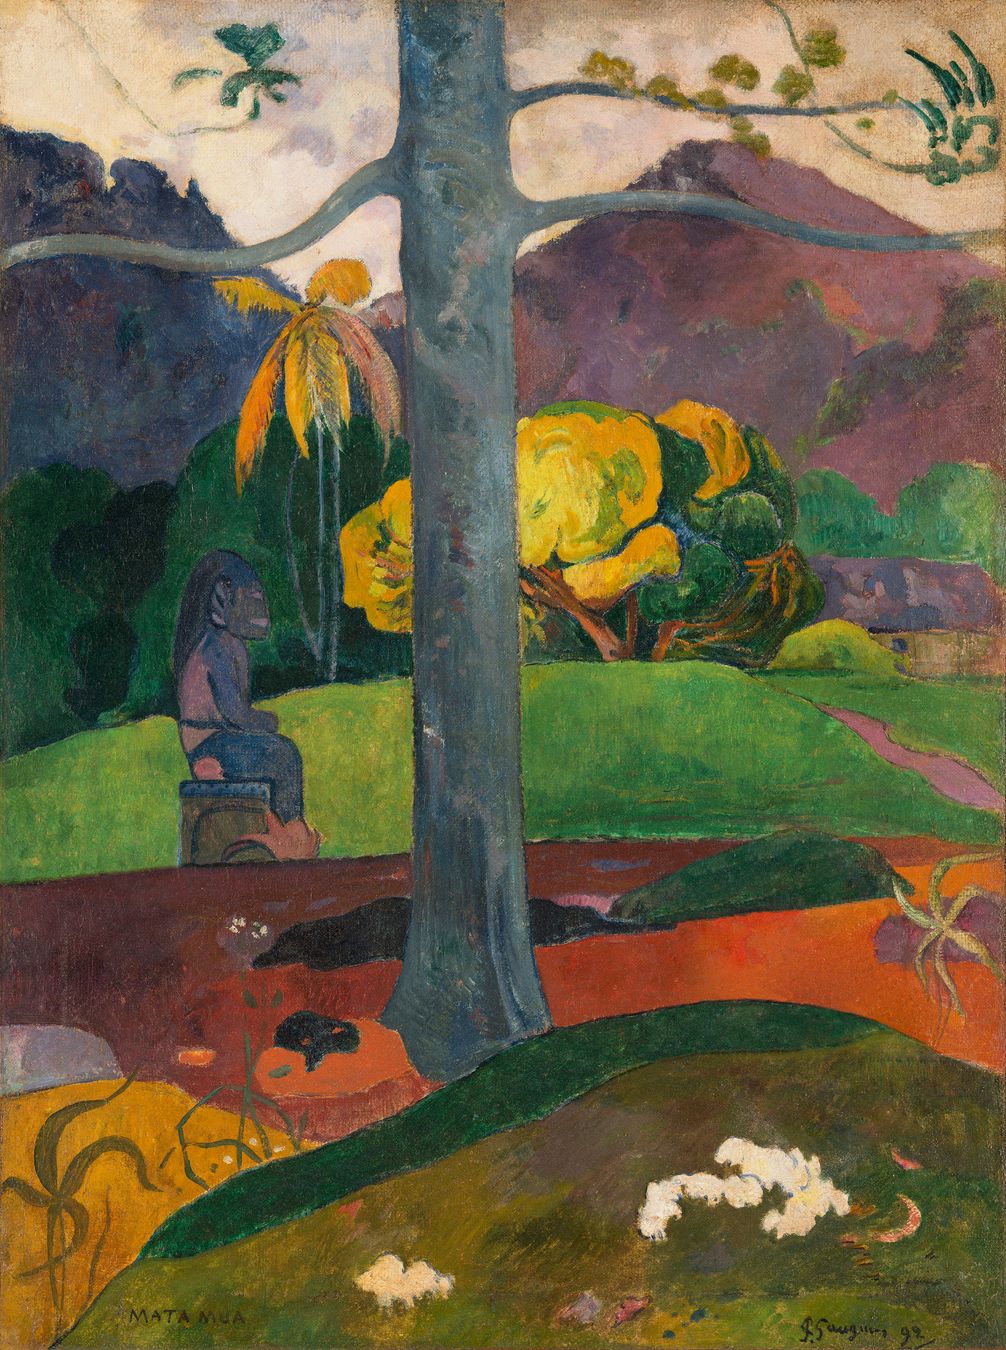 “Mata Mua (Érase una vez)” de Paul Gauguin